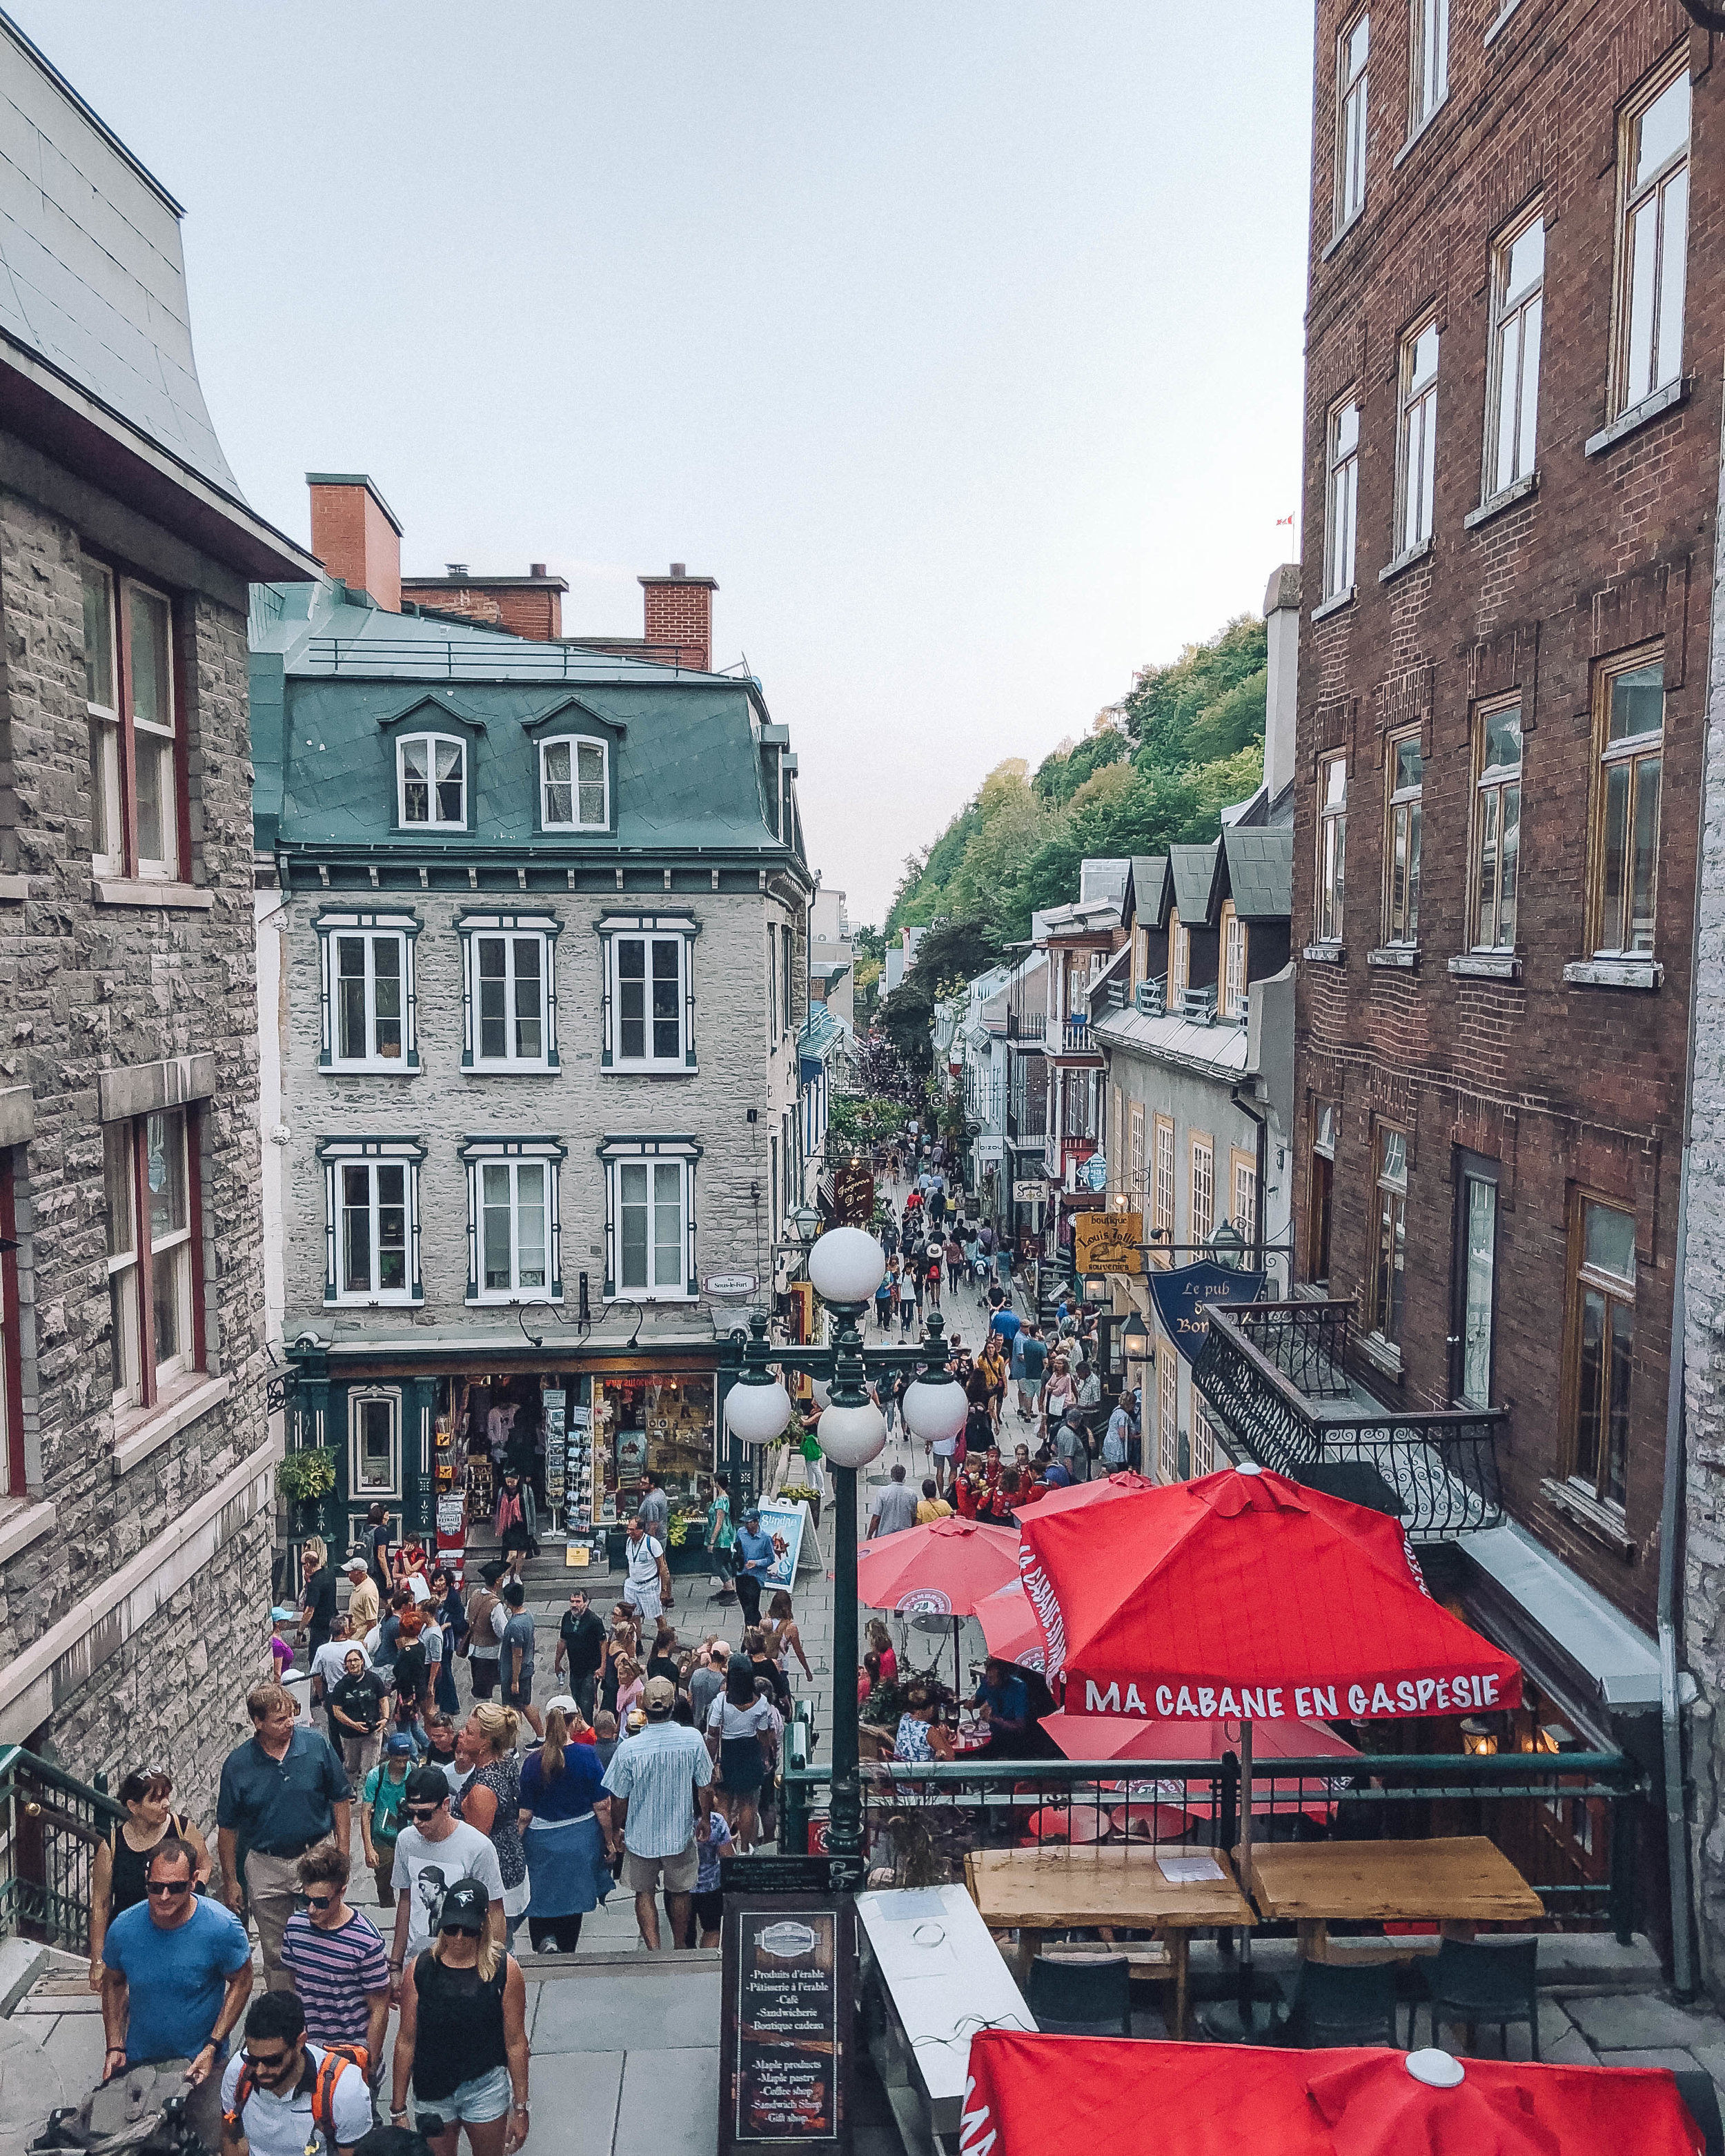 Petit Champlain, Vieux-Québec / Old Town - Quebec City - Canada